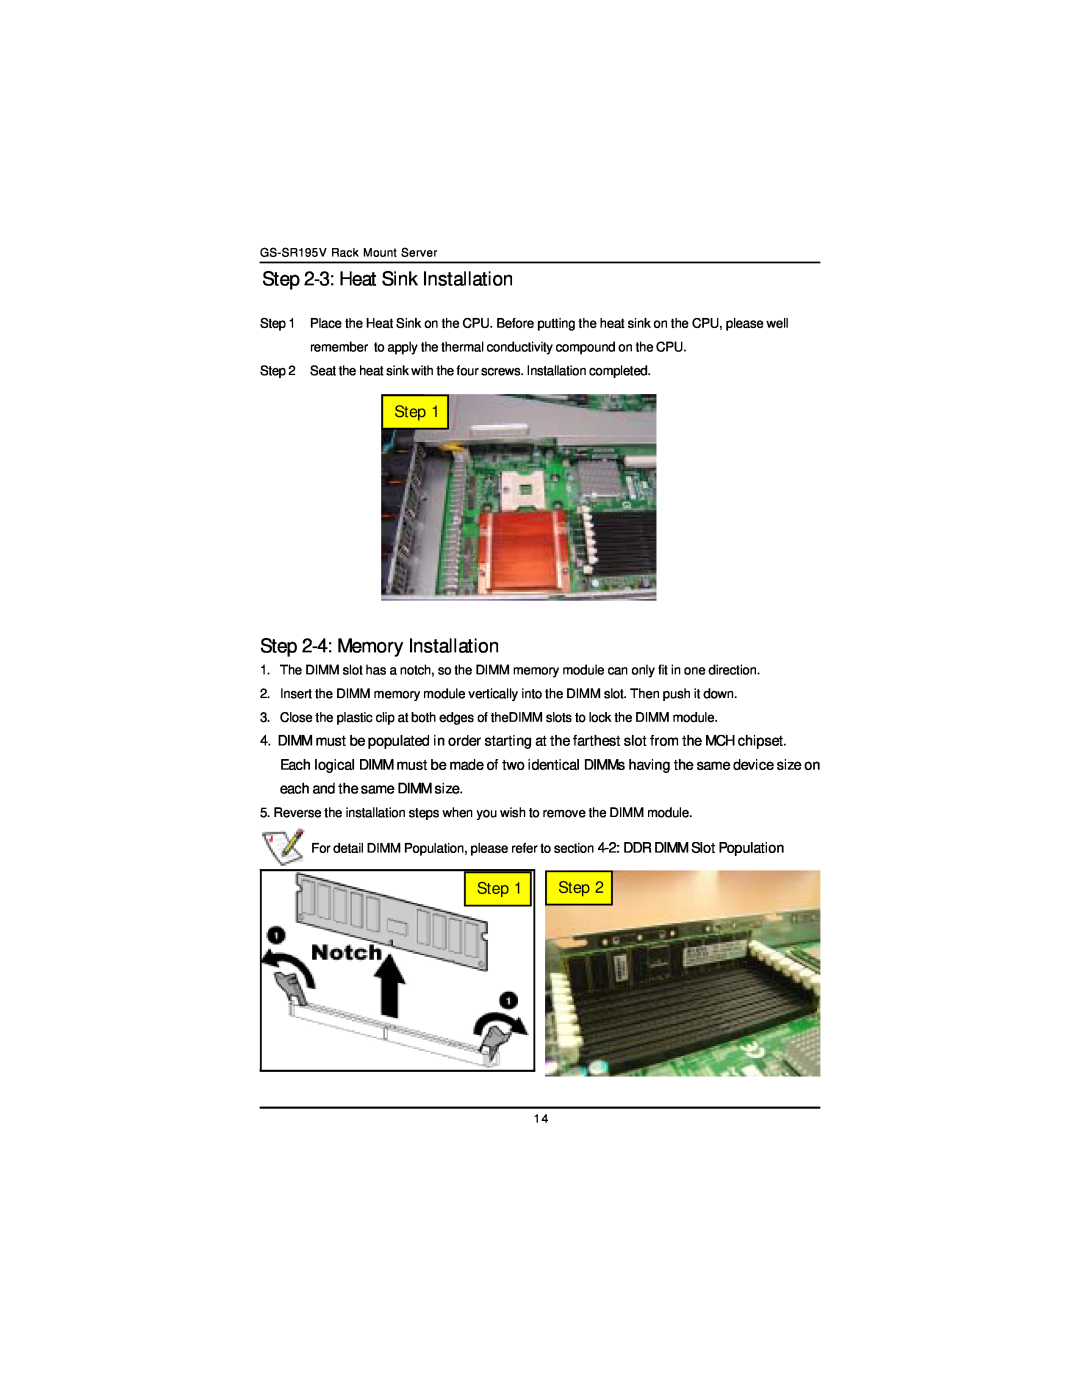 Intel GS-SR195V manual 3 Heat Sink Installation, 4 Memory Installation, Step 